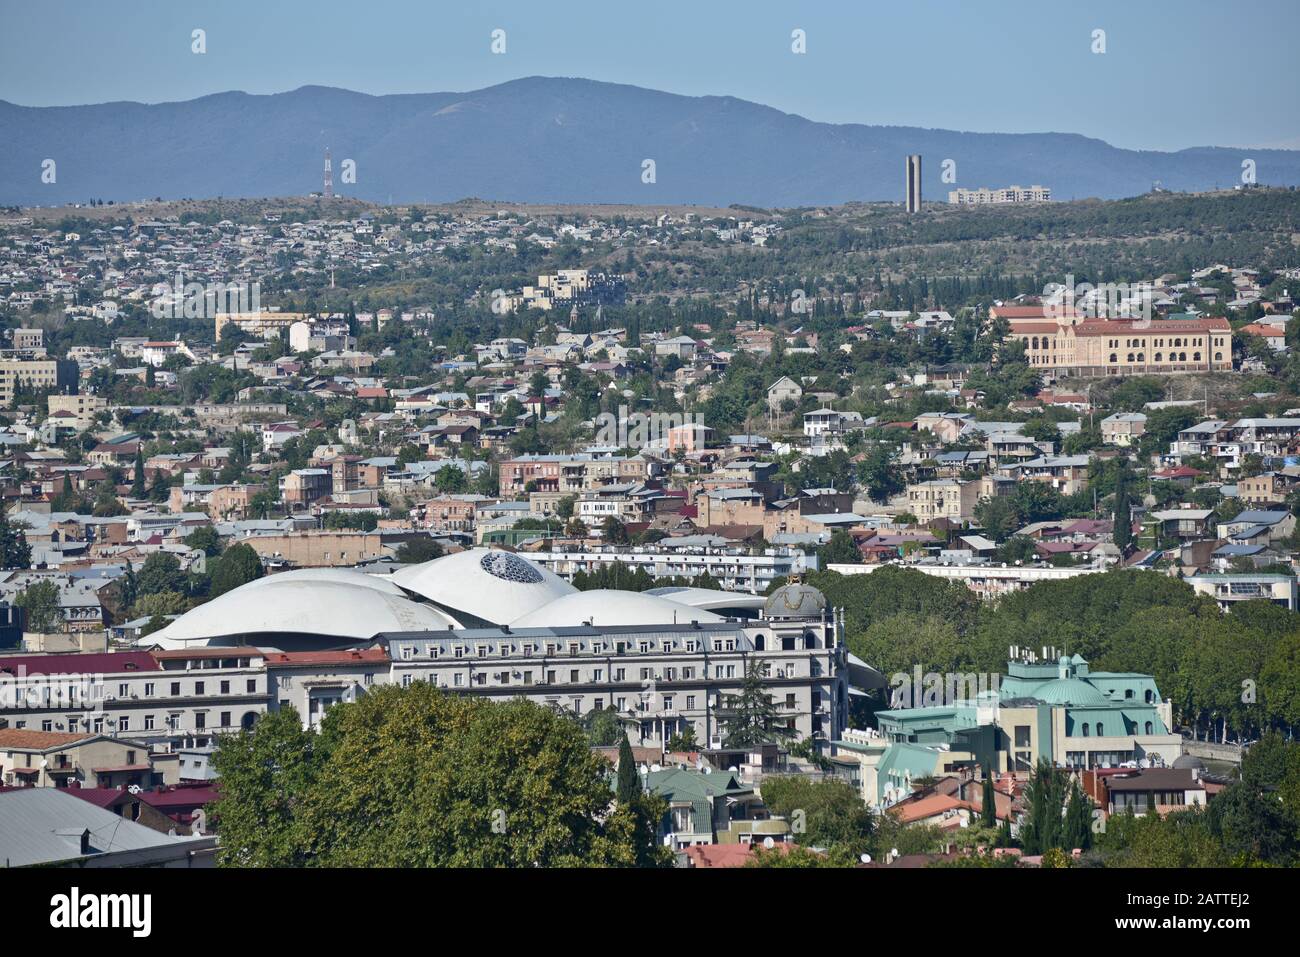 Tbilissi : salle de la fonction publique, vue panoramique depuis la colline Sololaki (Géorgie) Banque D'Images